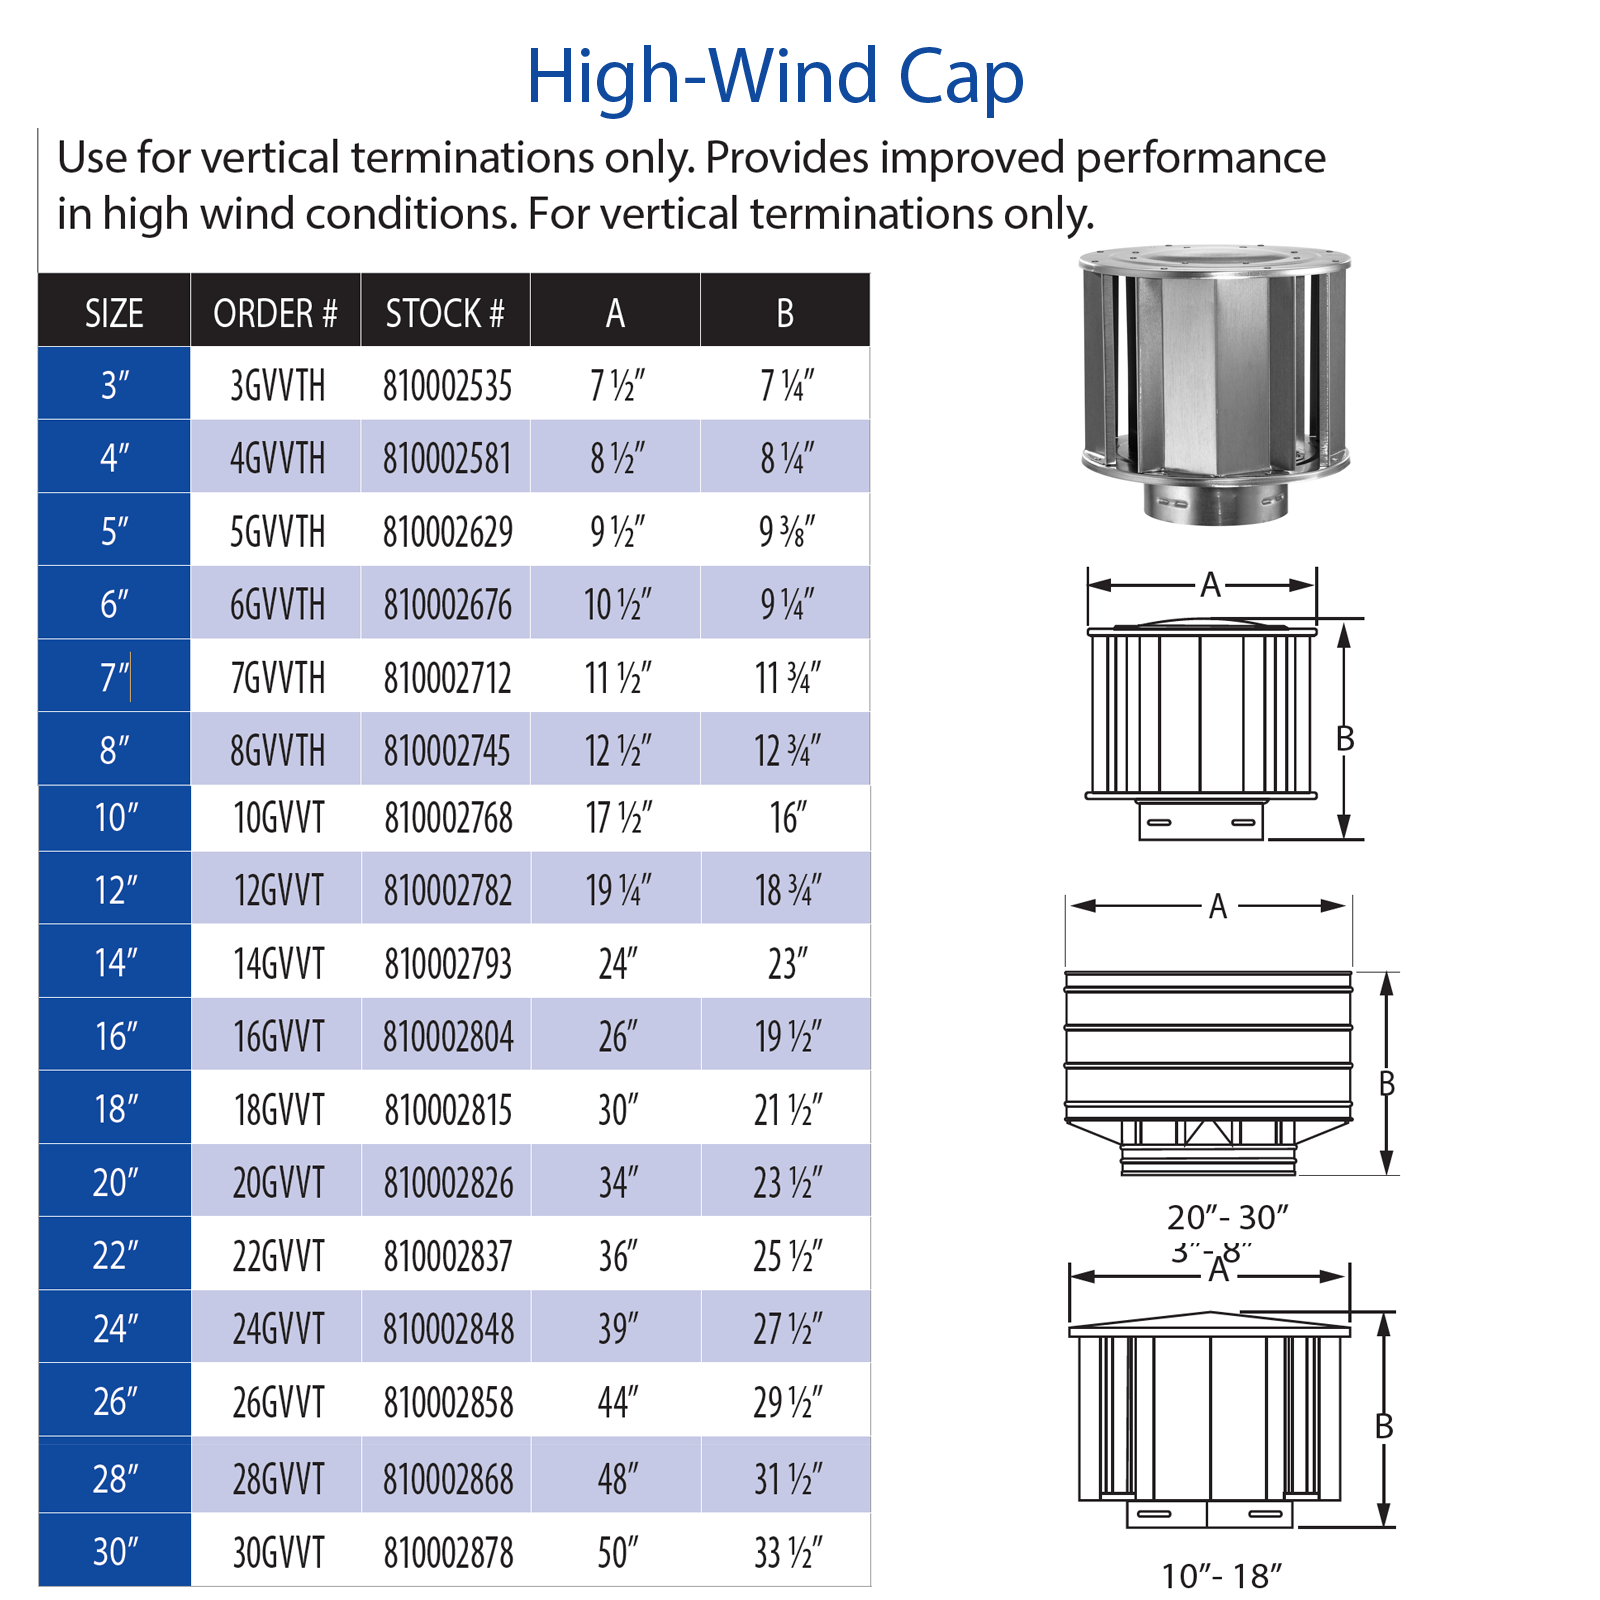 DuraVent Type B High-Wind Cap | 3GVVTH